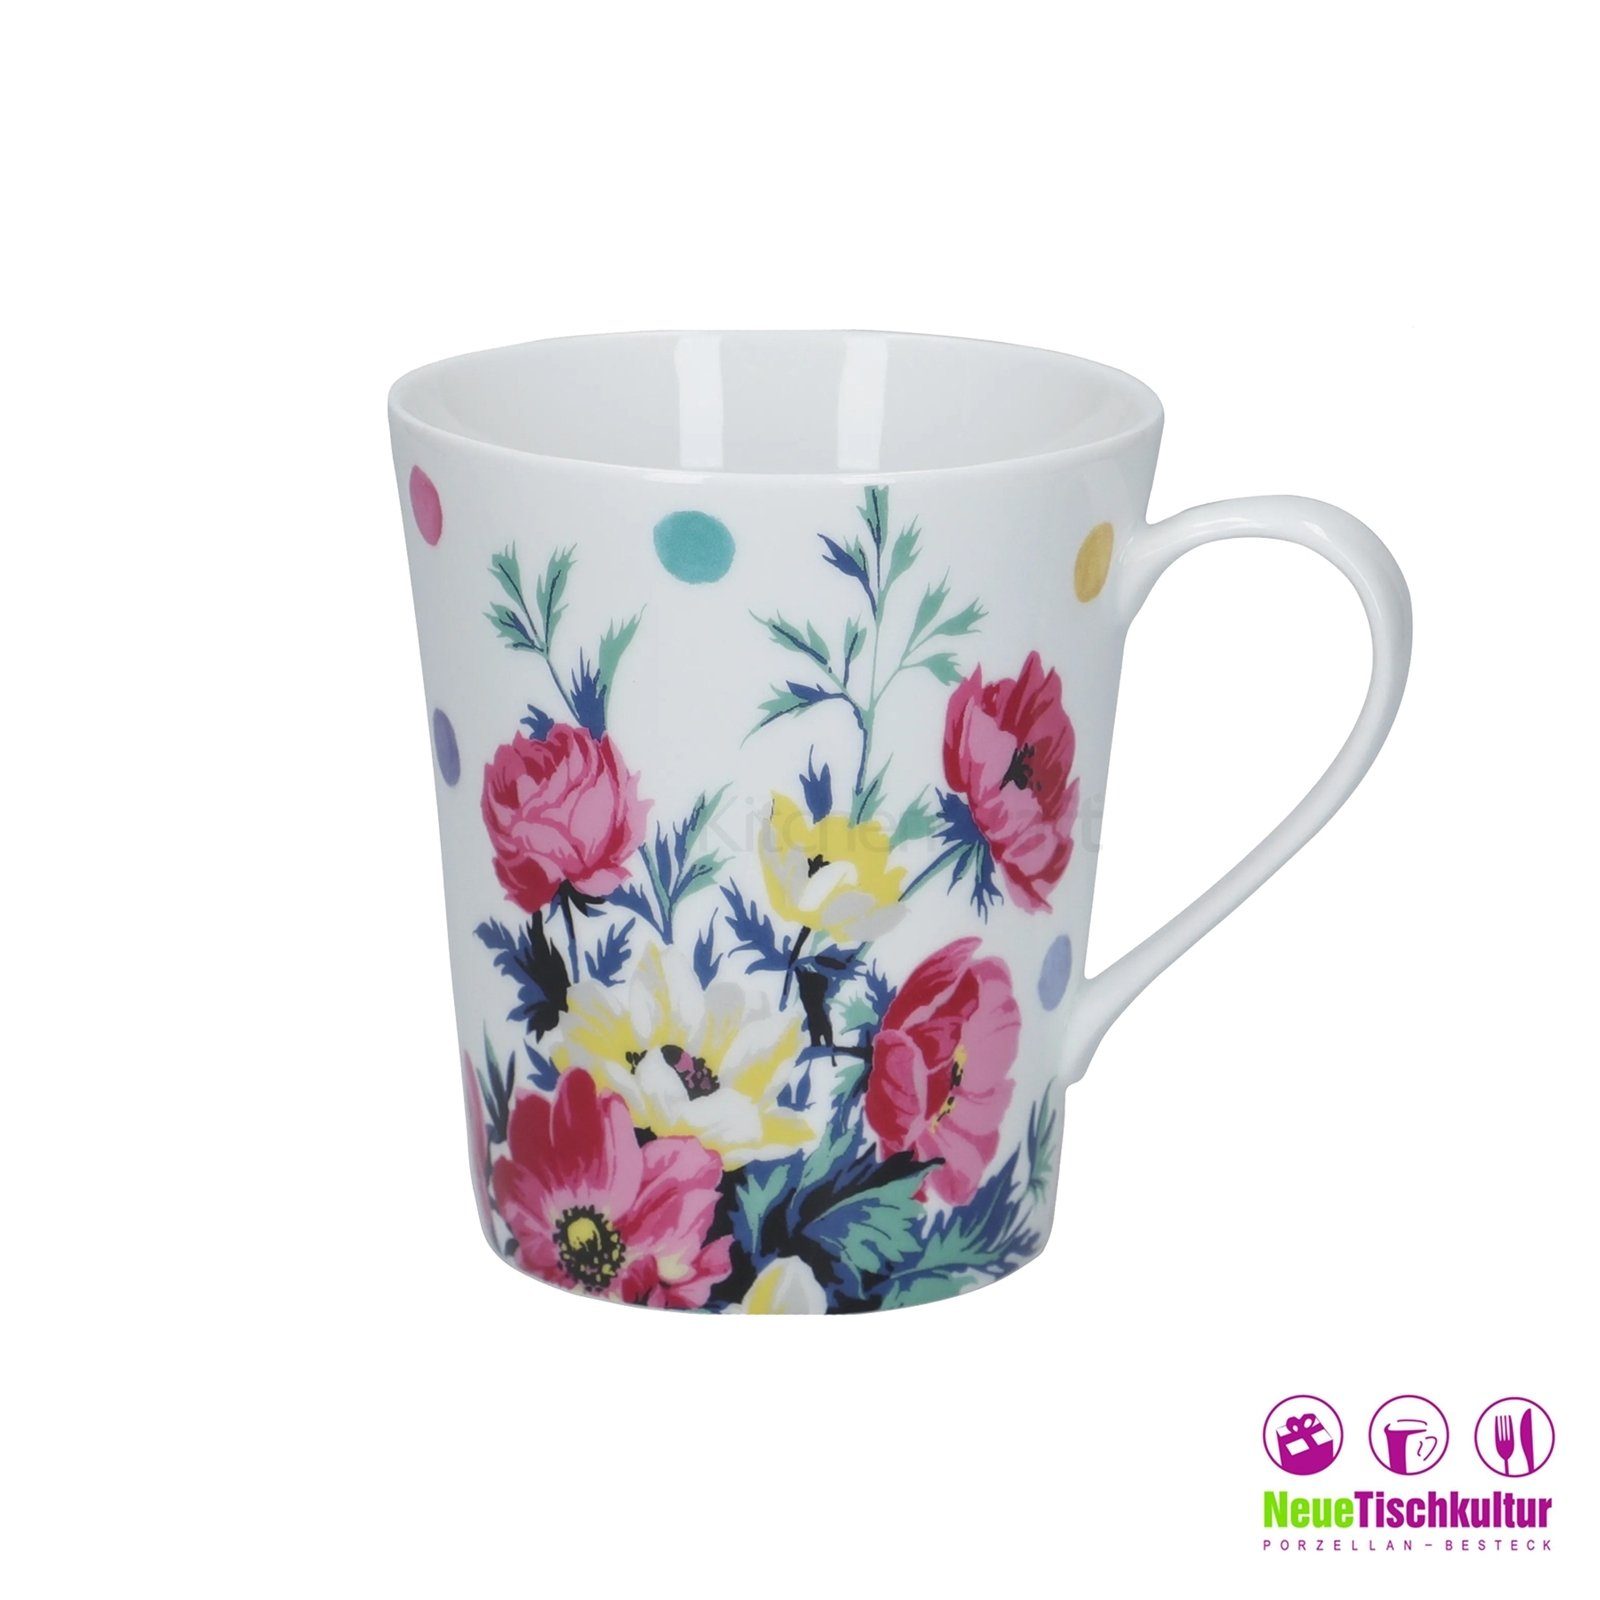 Porzellan Blumendekor Weiß Porzellan, Neuetischkultur Blume Tasse Mikasa, Bunt Kaffeebecher 4er-Set Kaffeetasse